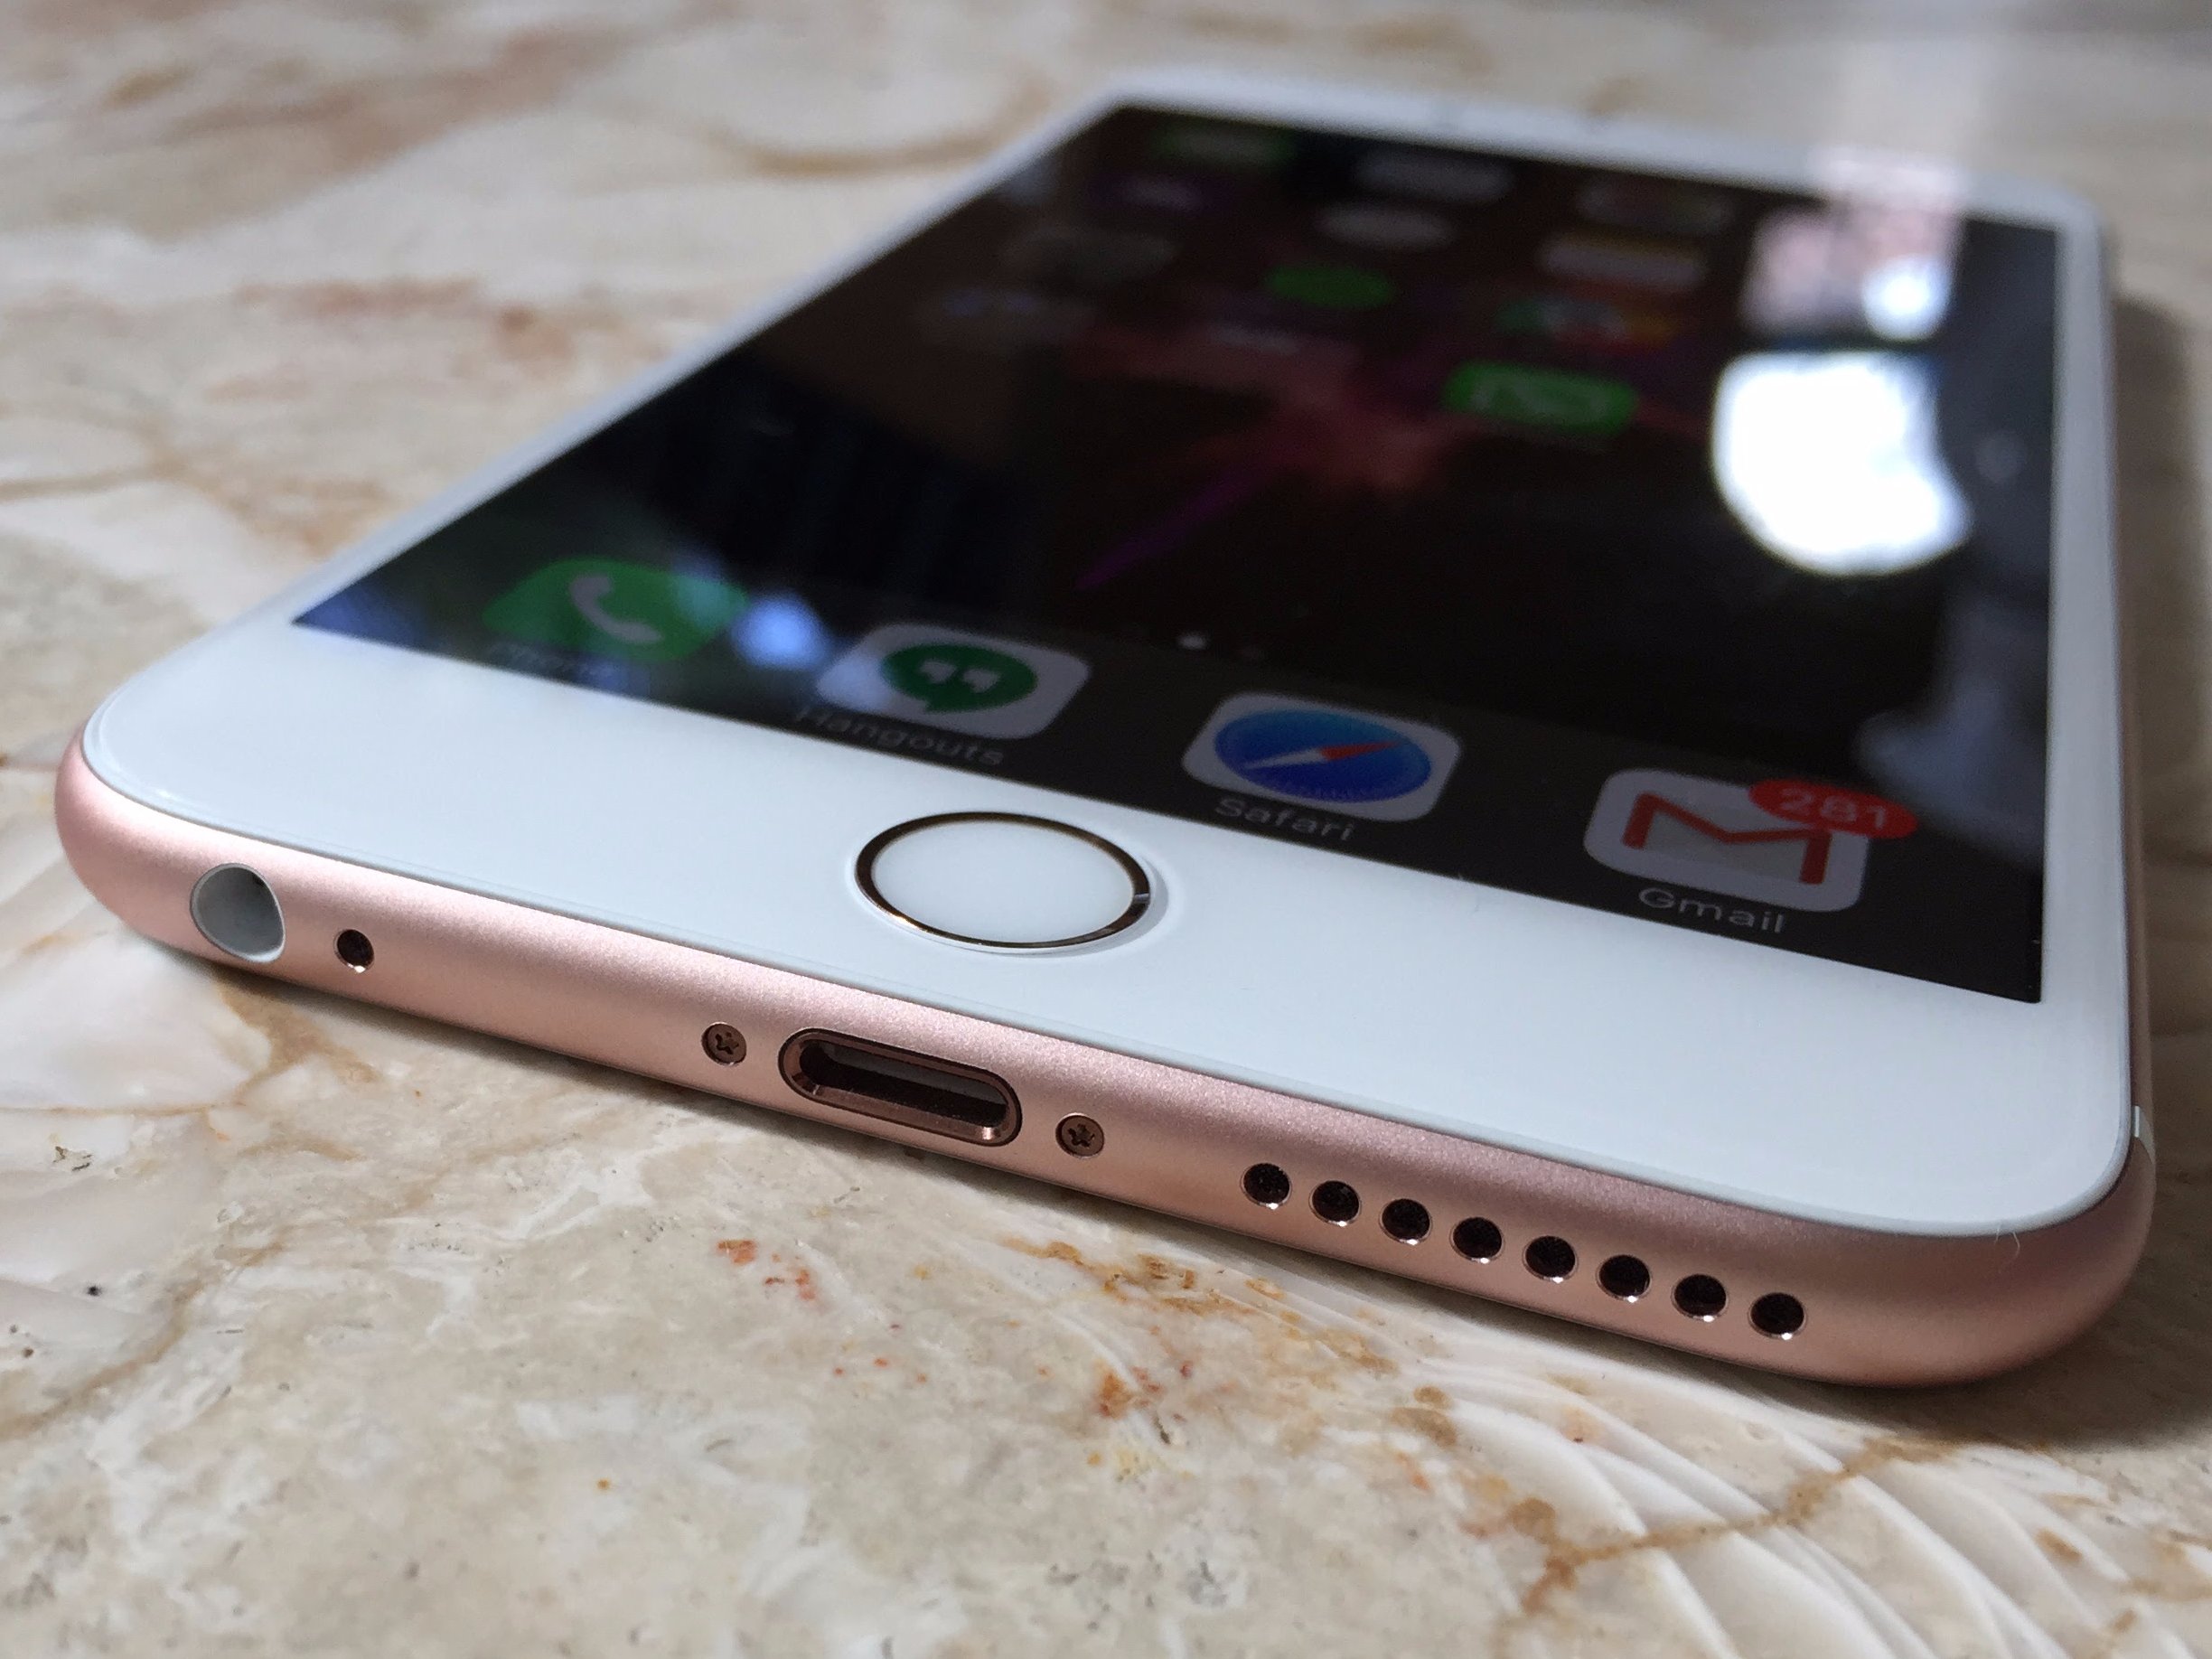 Những lý do Apple nên loại bỏ jack tai nghe trên iPhone 7